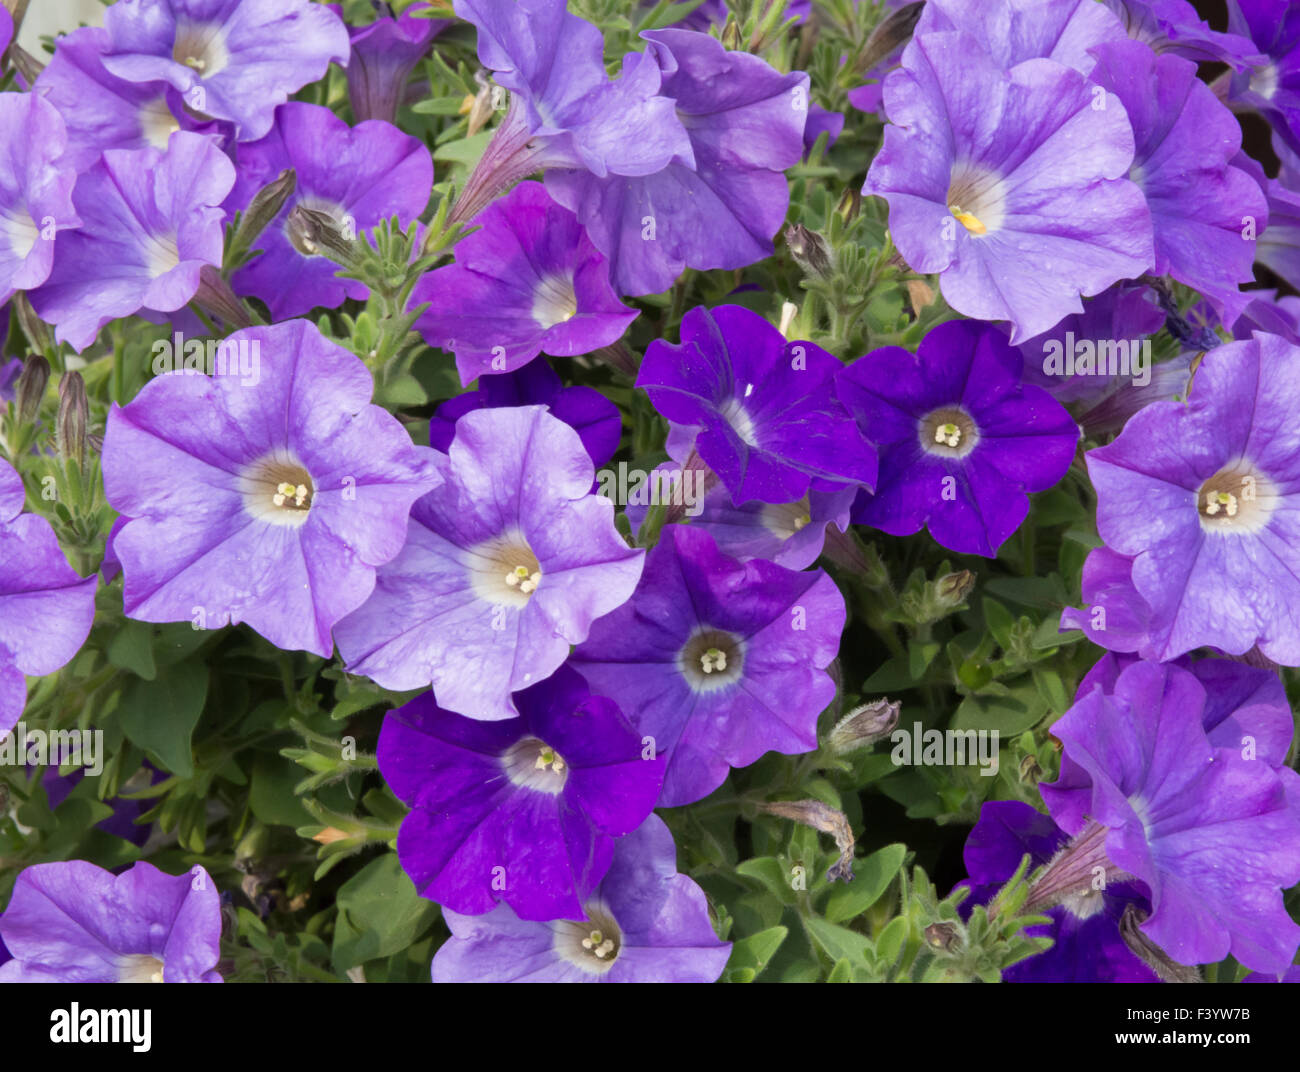 Purple petunias Stock Photo - Alamy